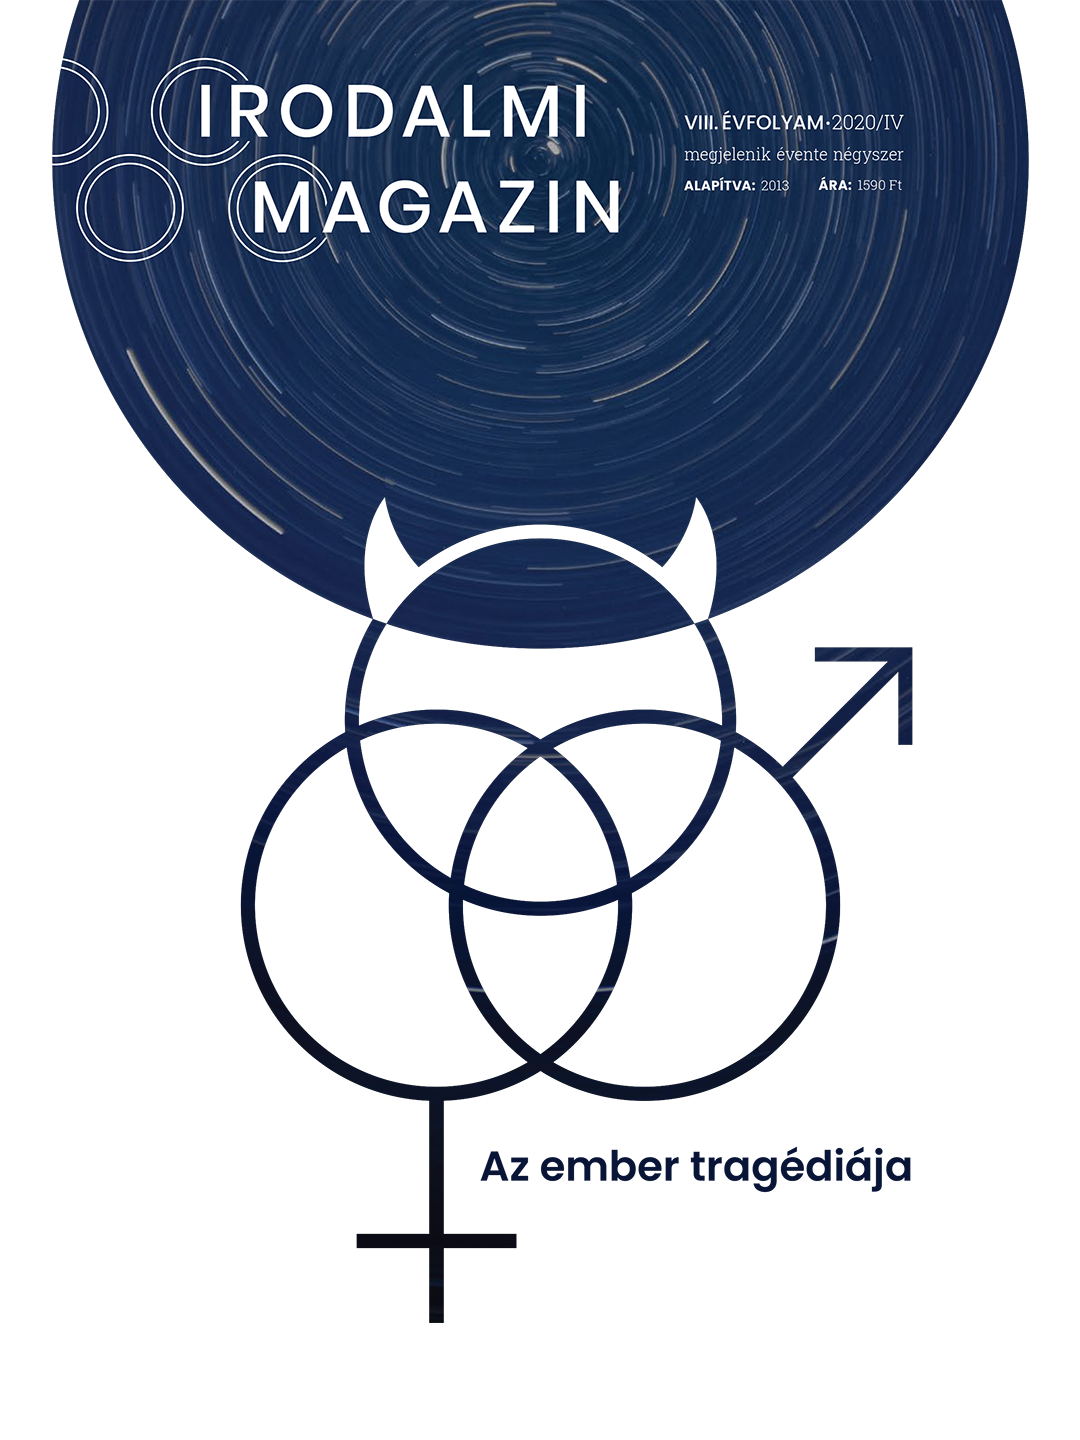 Irodalmi Magazin – Az ember tragédiája